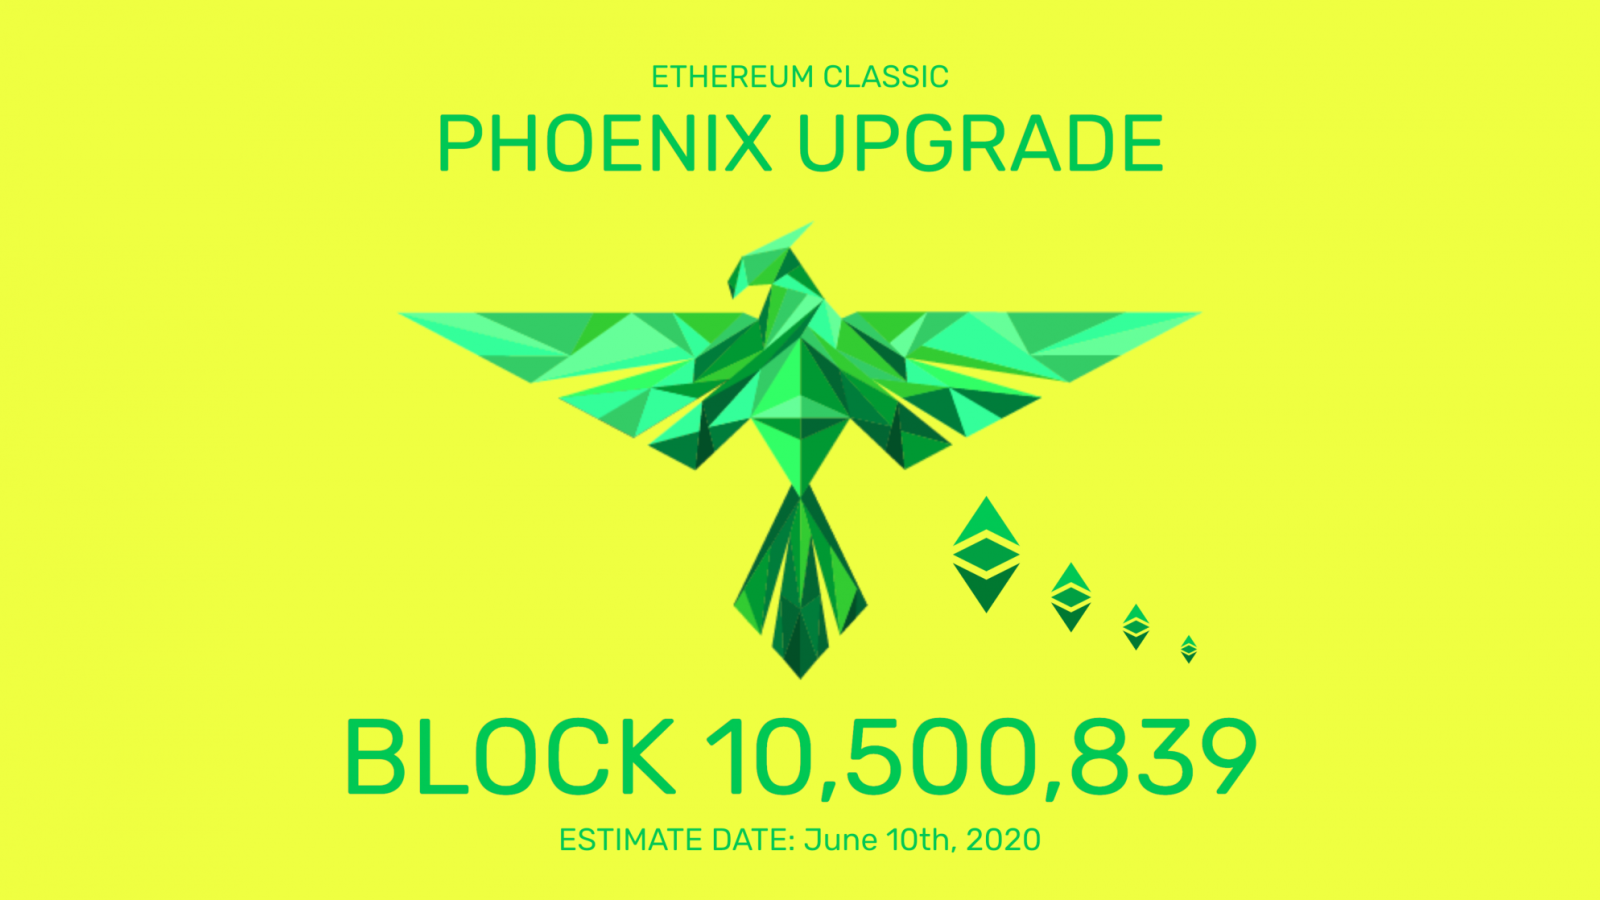 Ethereum classic phoenix bitcoin 2018 price